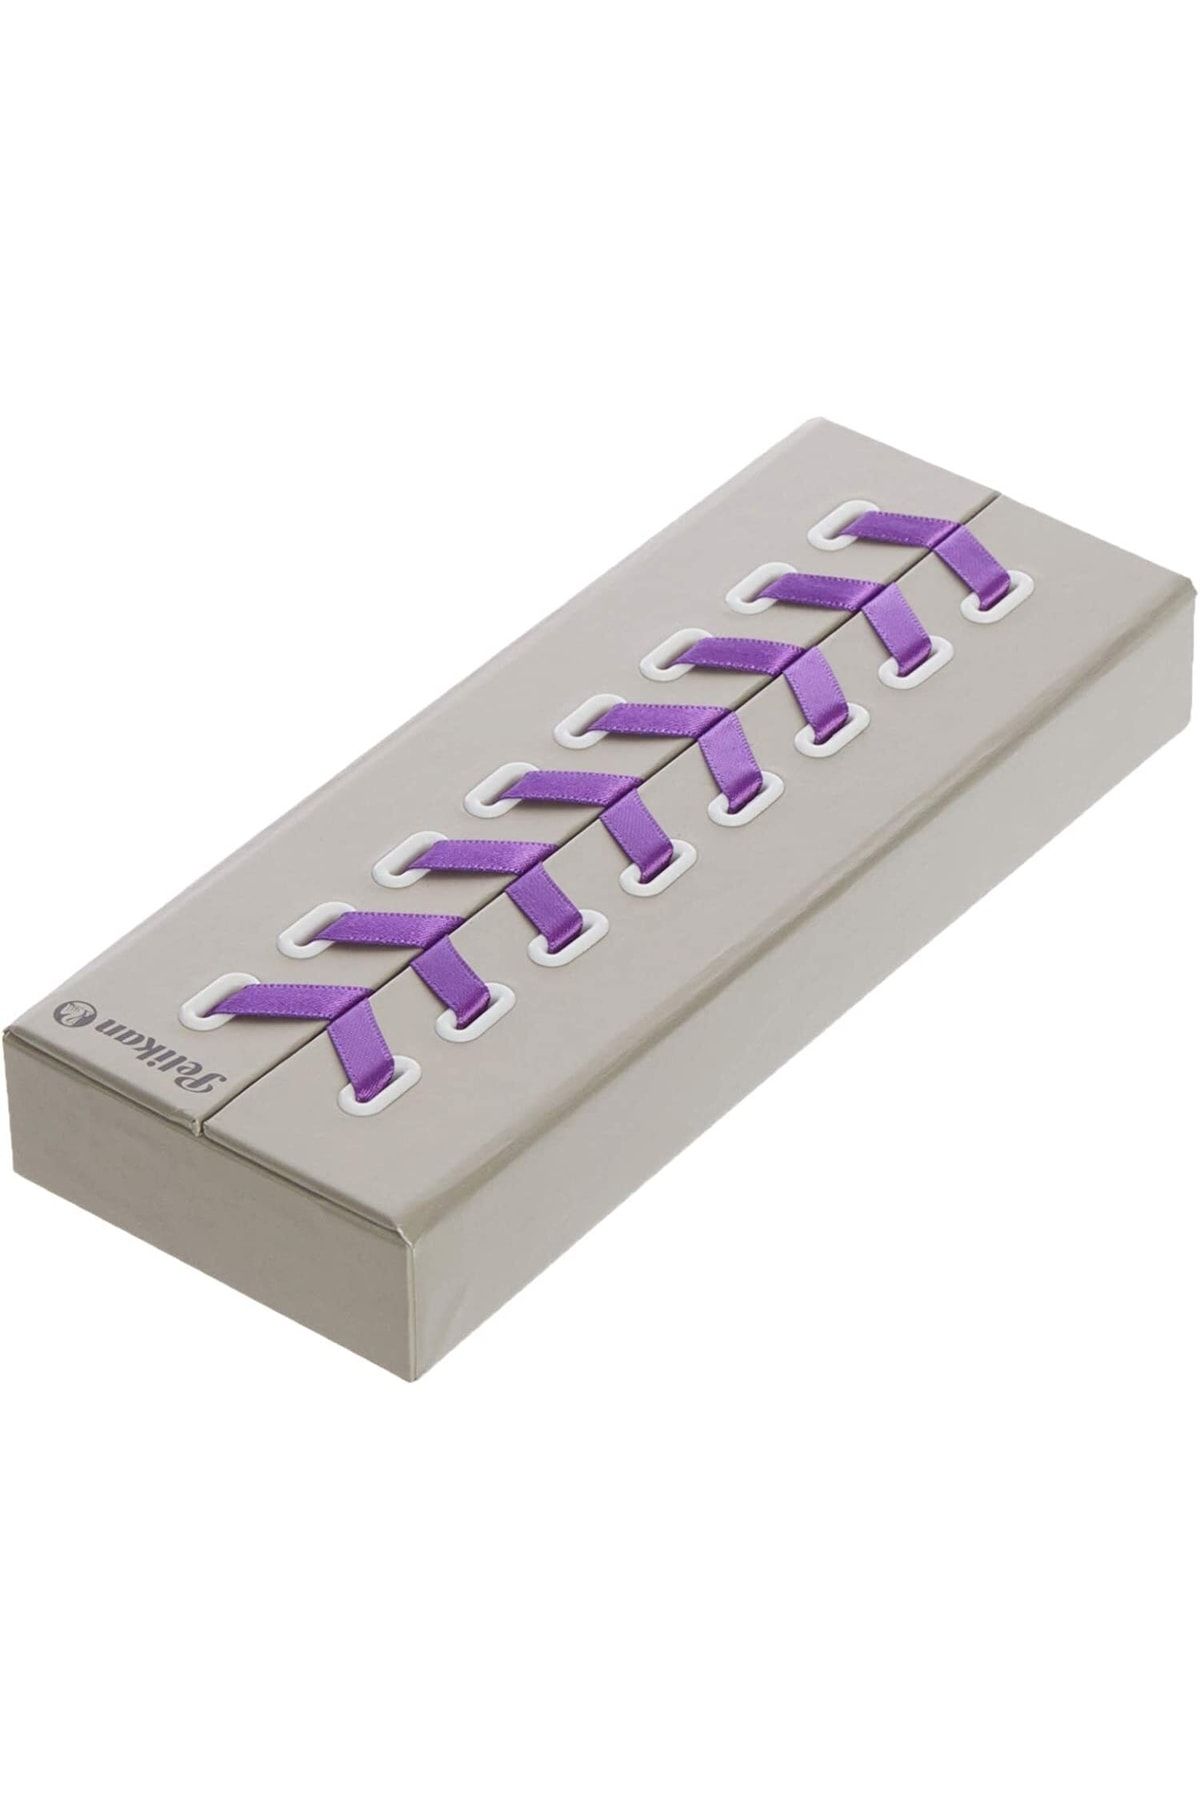 Pelikan M600 Violet White Dolma Kalem In Special Gift Box, F Uç